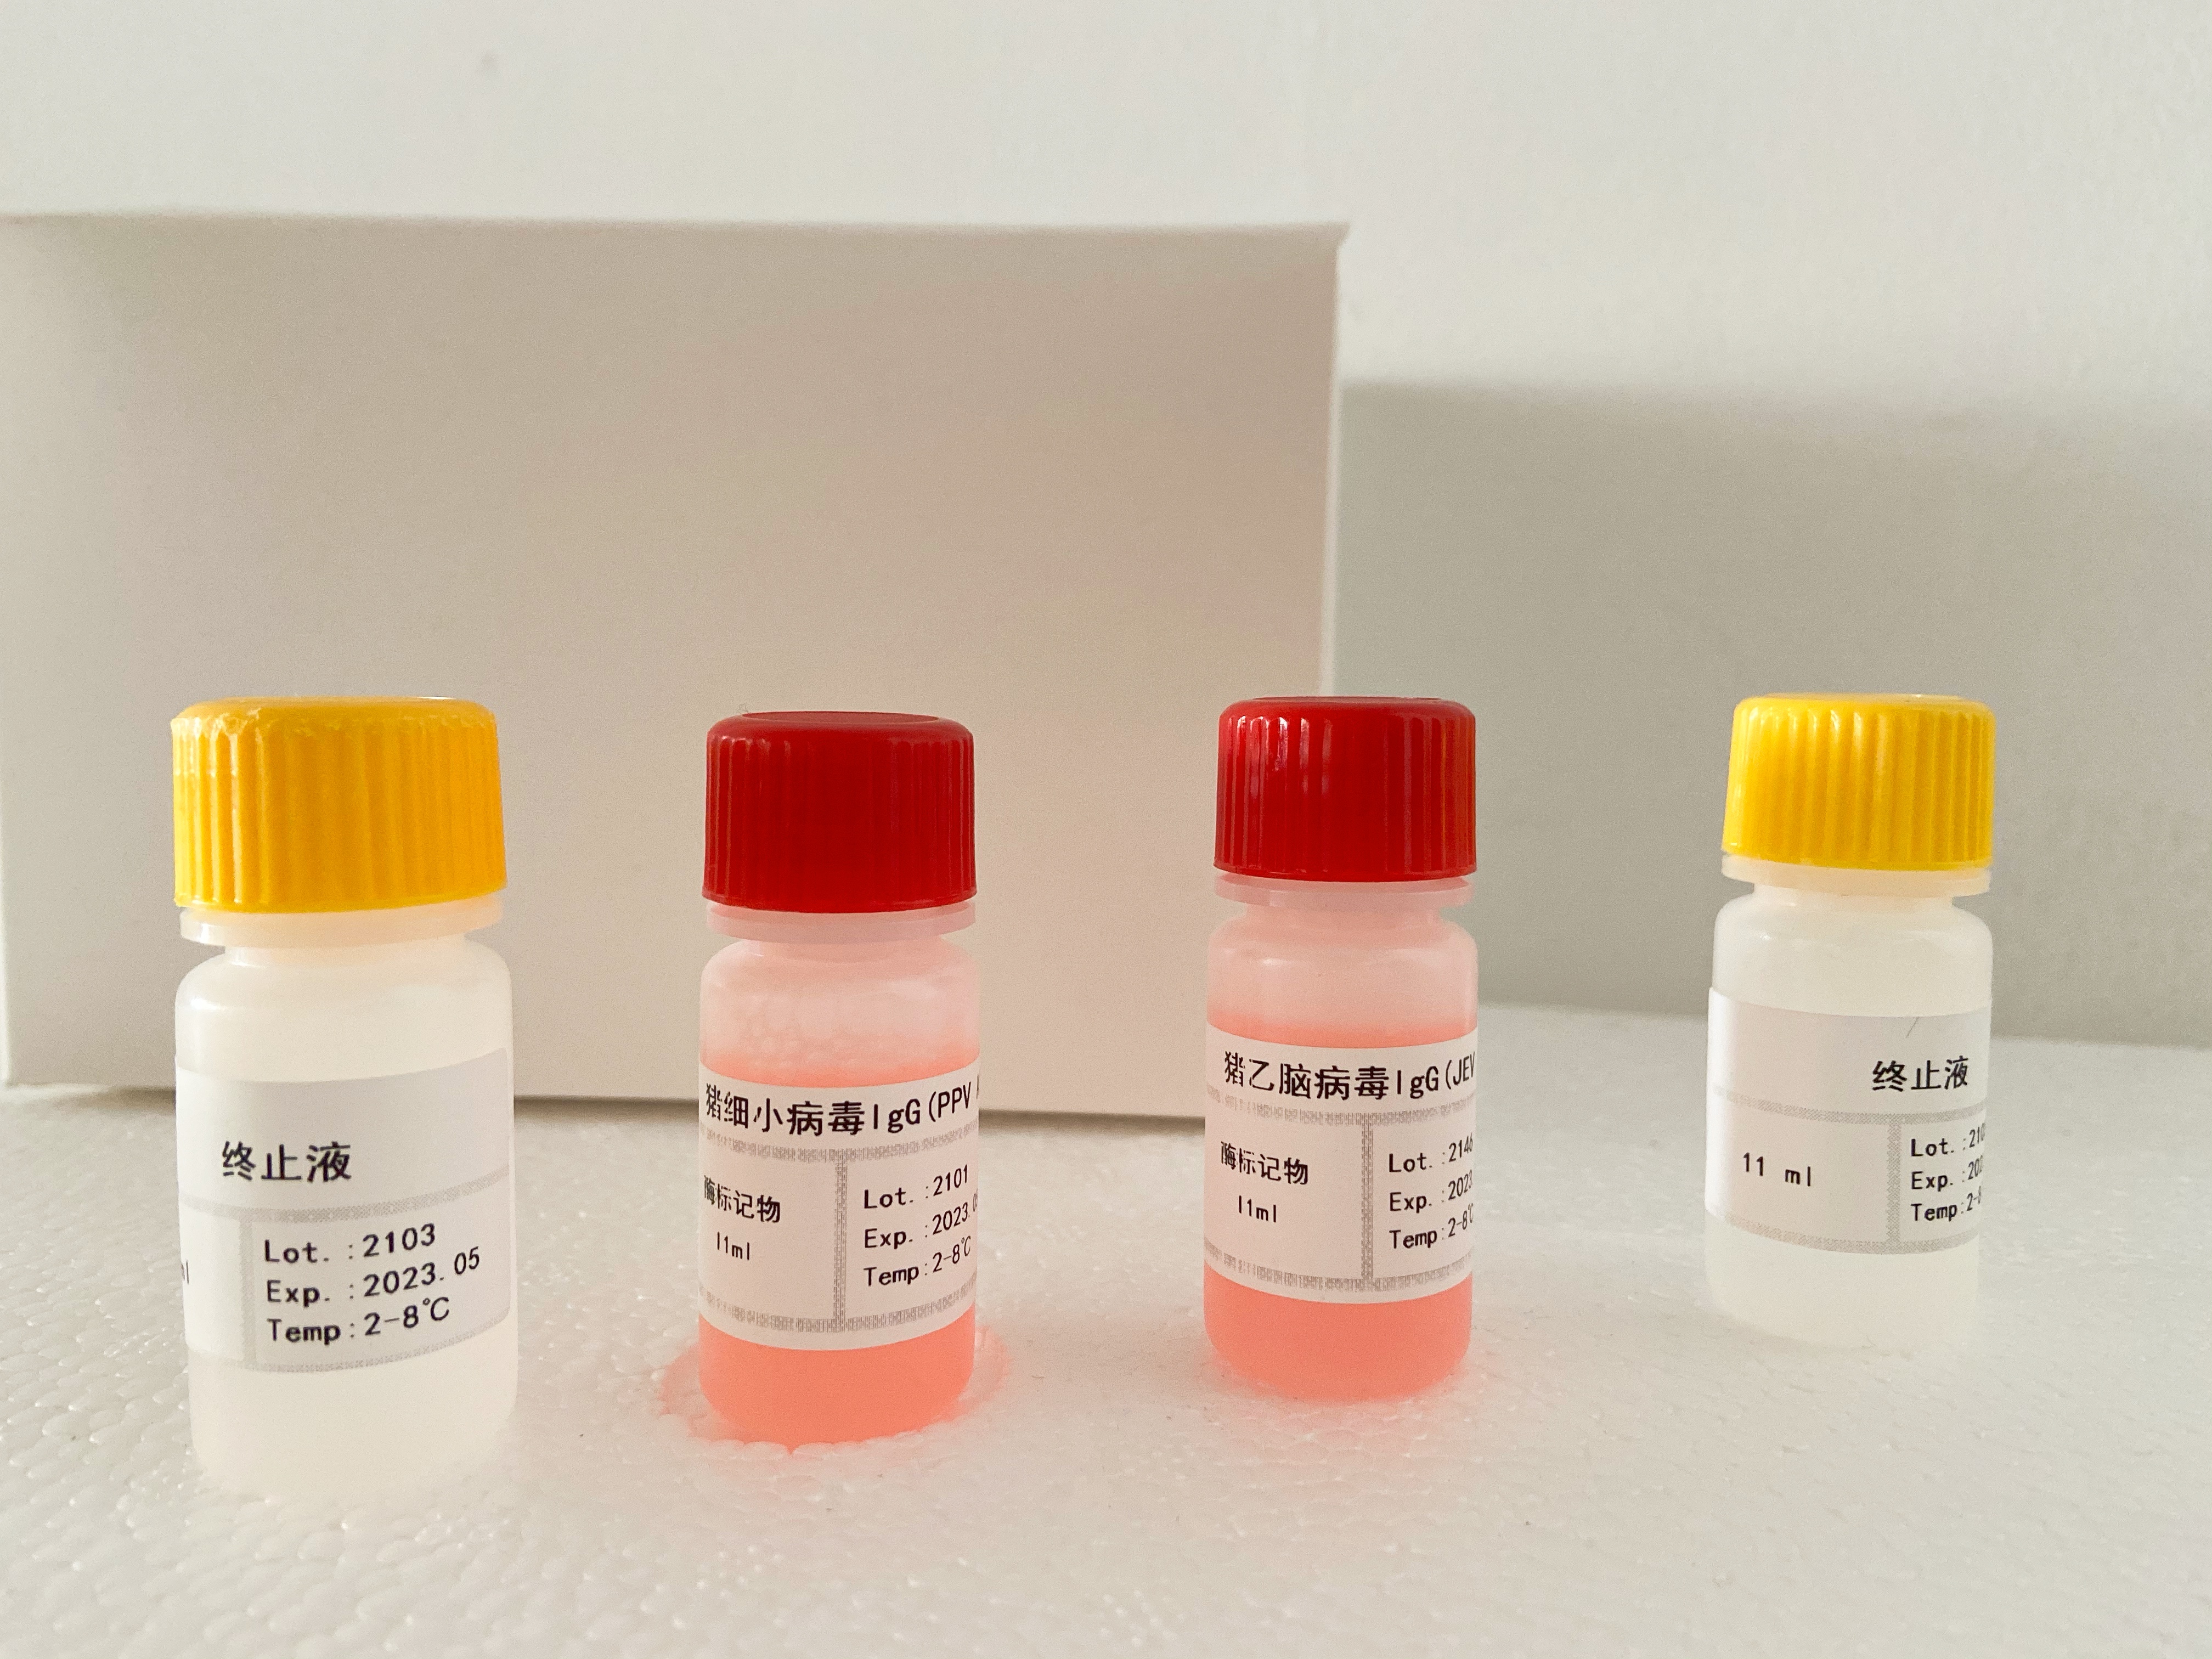 小鼠肌酸激酶(CK)检测试剂盒